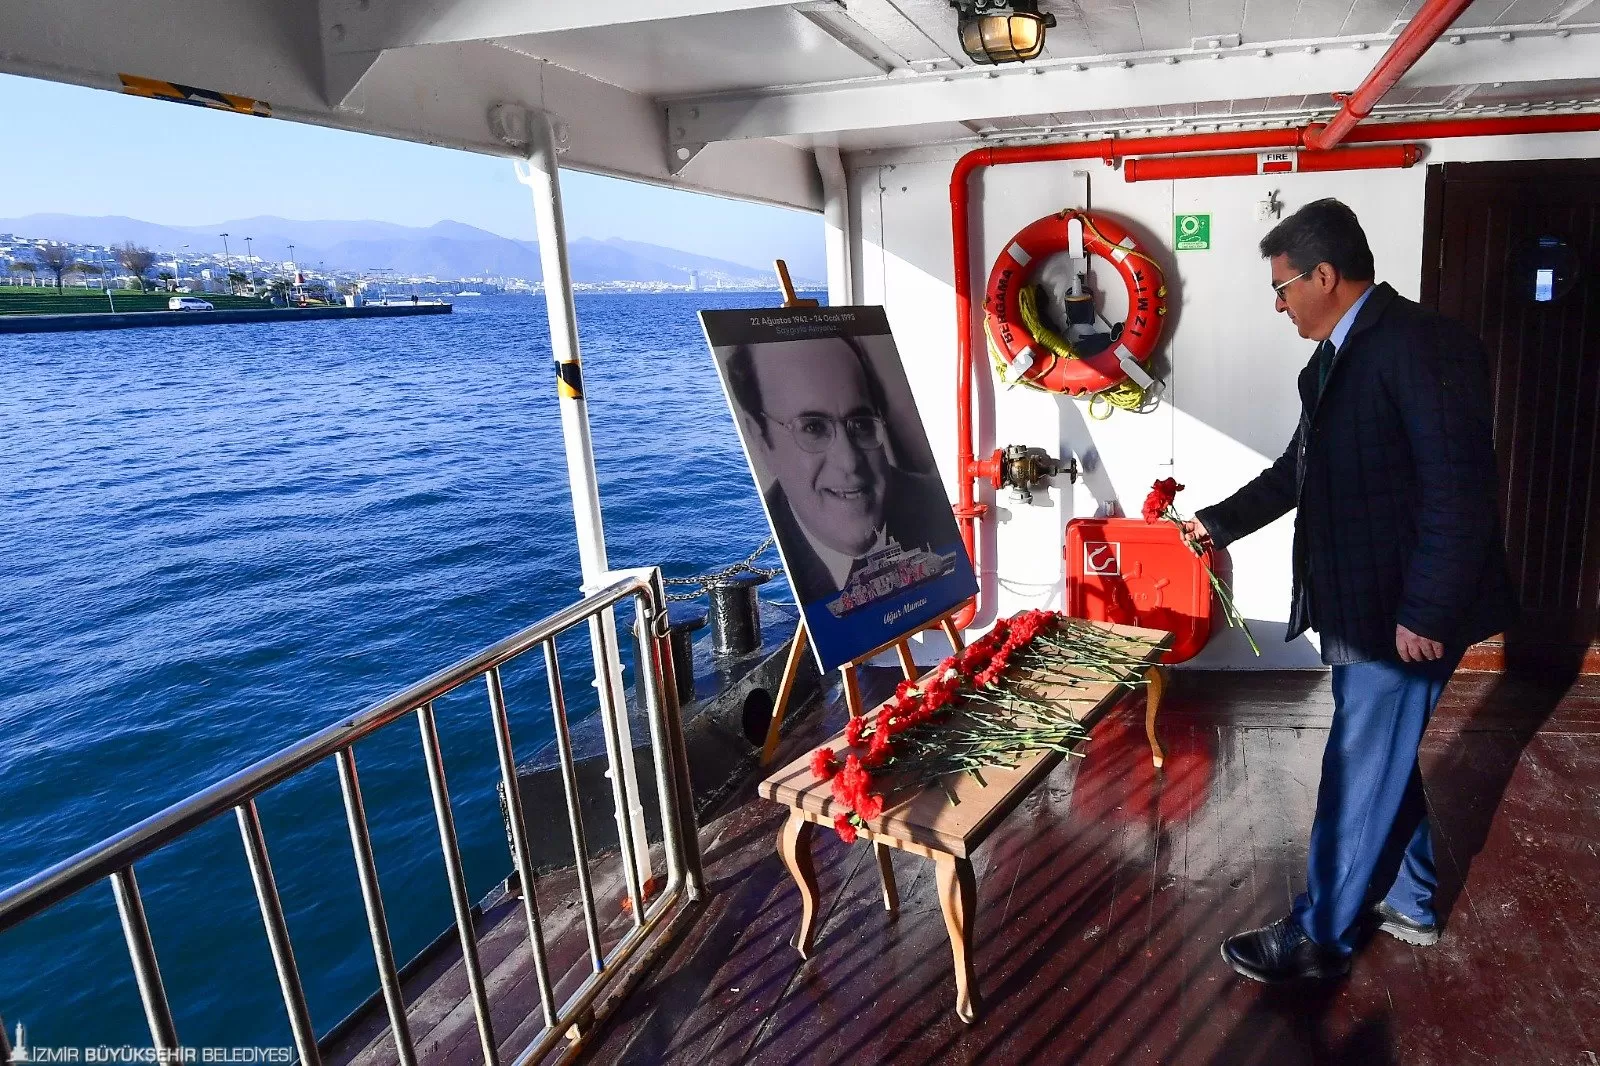 Büyük Önder Mustafa Kemal Atatürk'ün denizciliğe verdiği önemi anlatan "100 Yıllık Deniz Yolculuğu: Atatürk ve Cumhuriyet Gemileri Fotoğraf Sergisi" İzmir'de deniz severlerle buluştu.